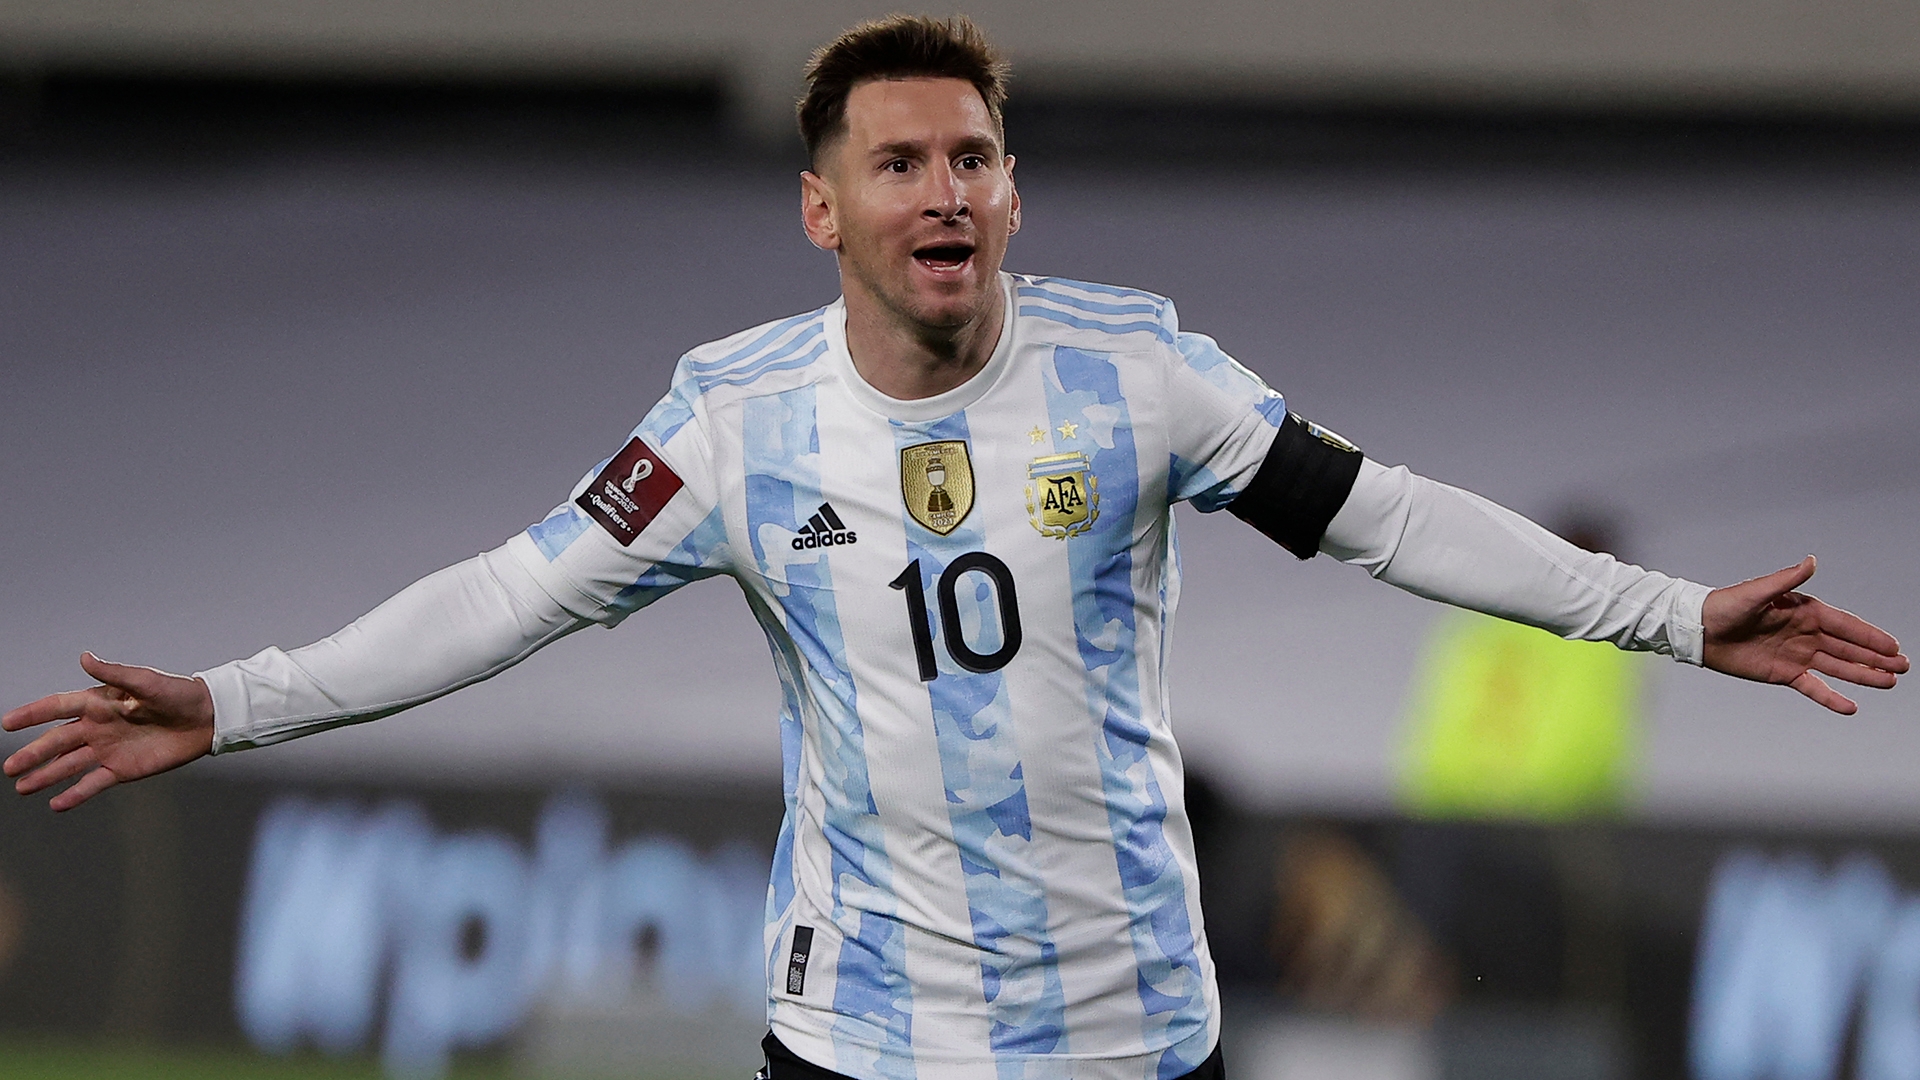 “Një lojtar si Messi lind çdo 50 ose 100 vjet”